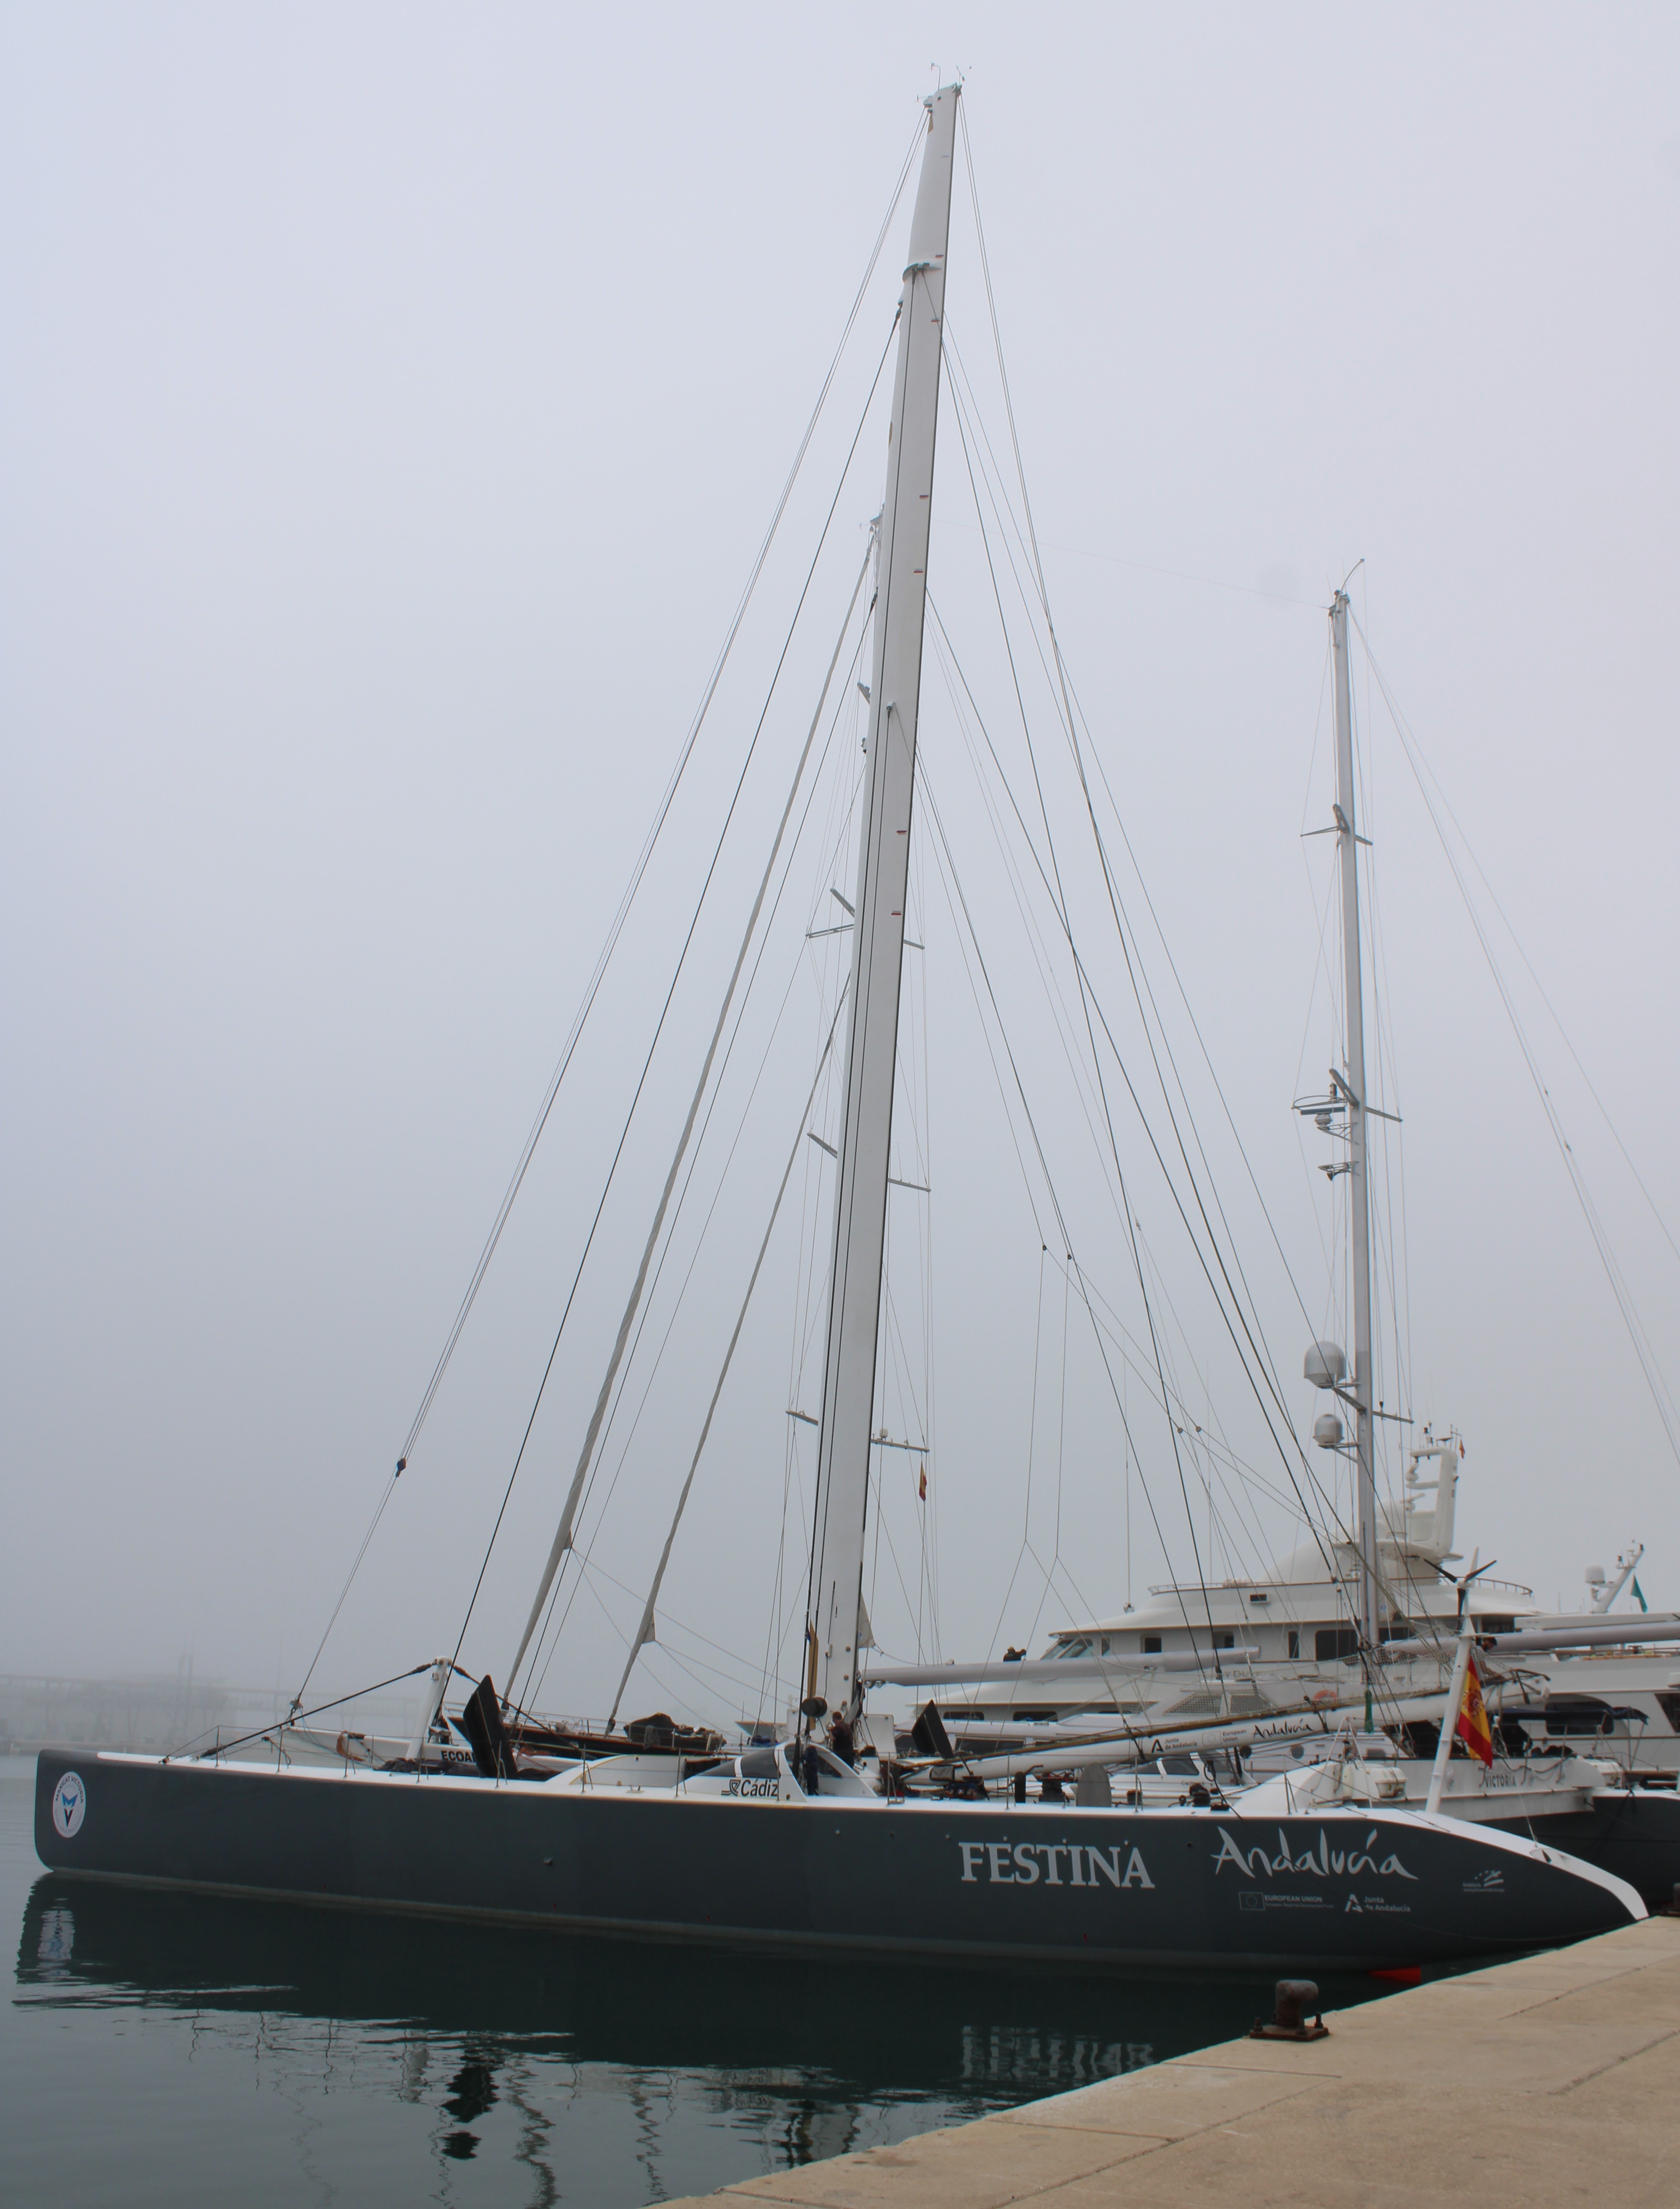 El alcalde Dénia ha visitado el barco “Victoria” del navegante Alex Pella